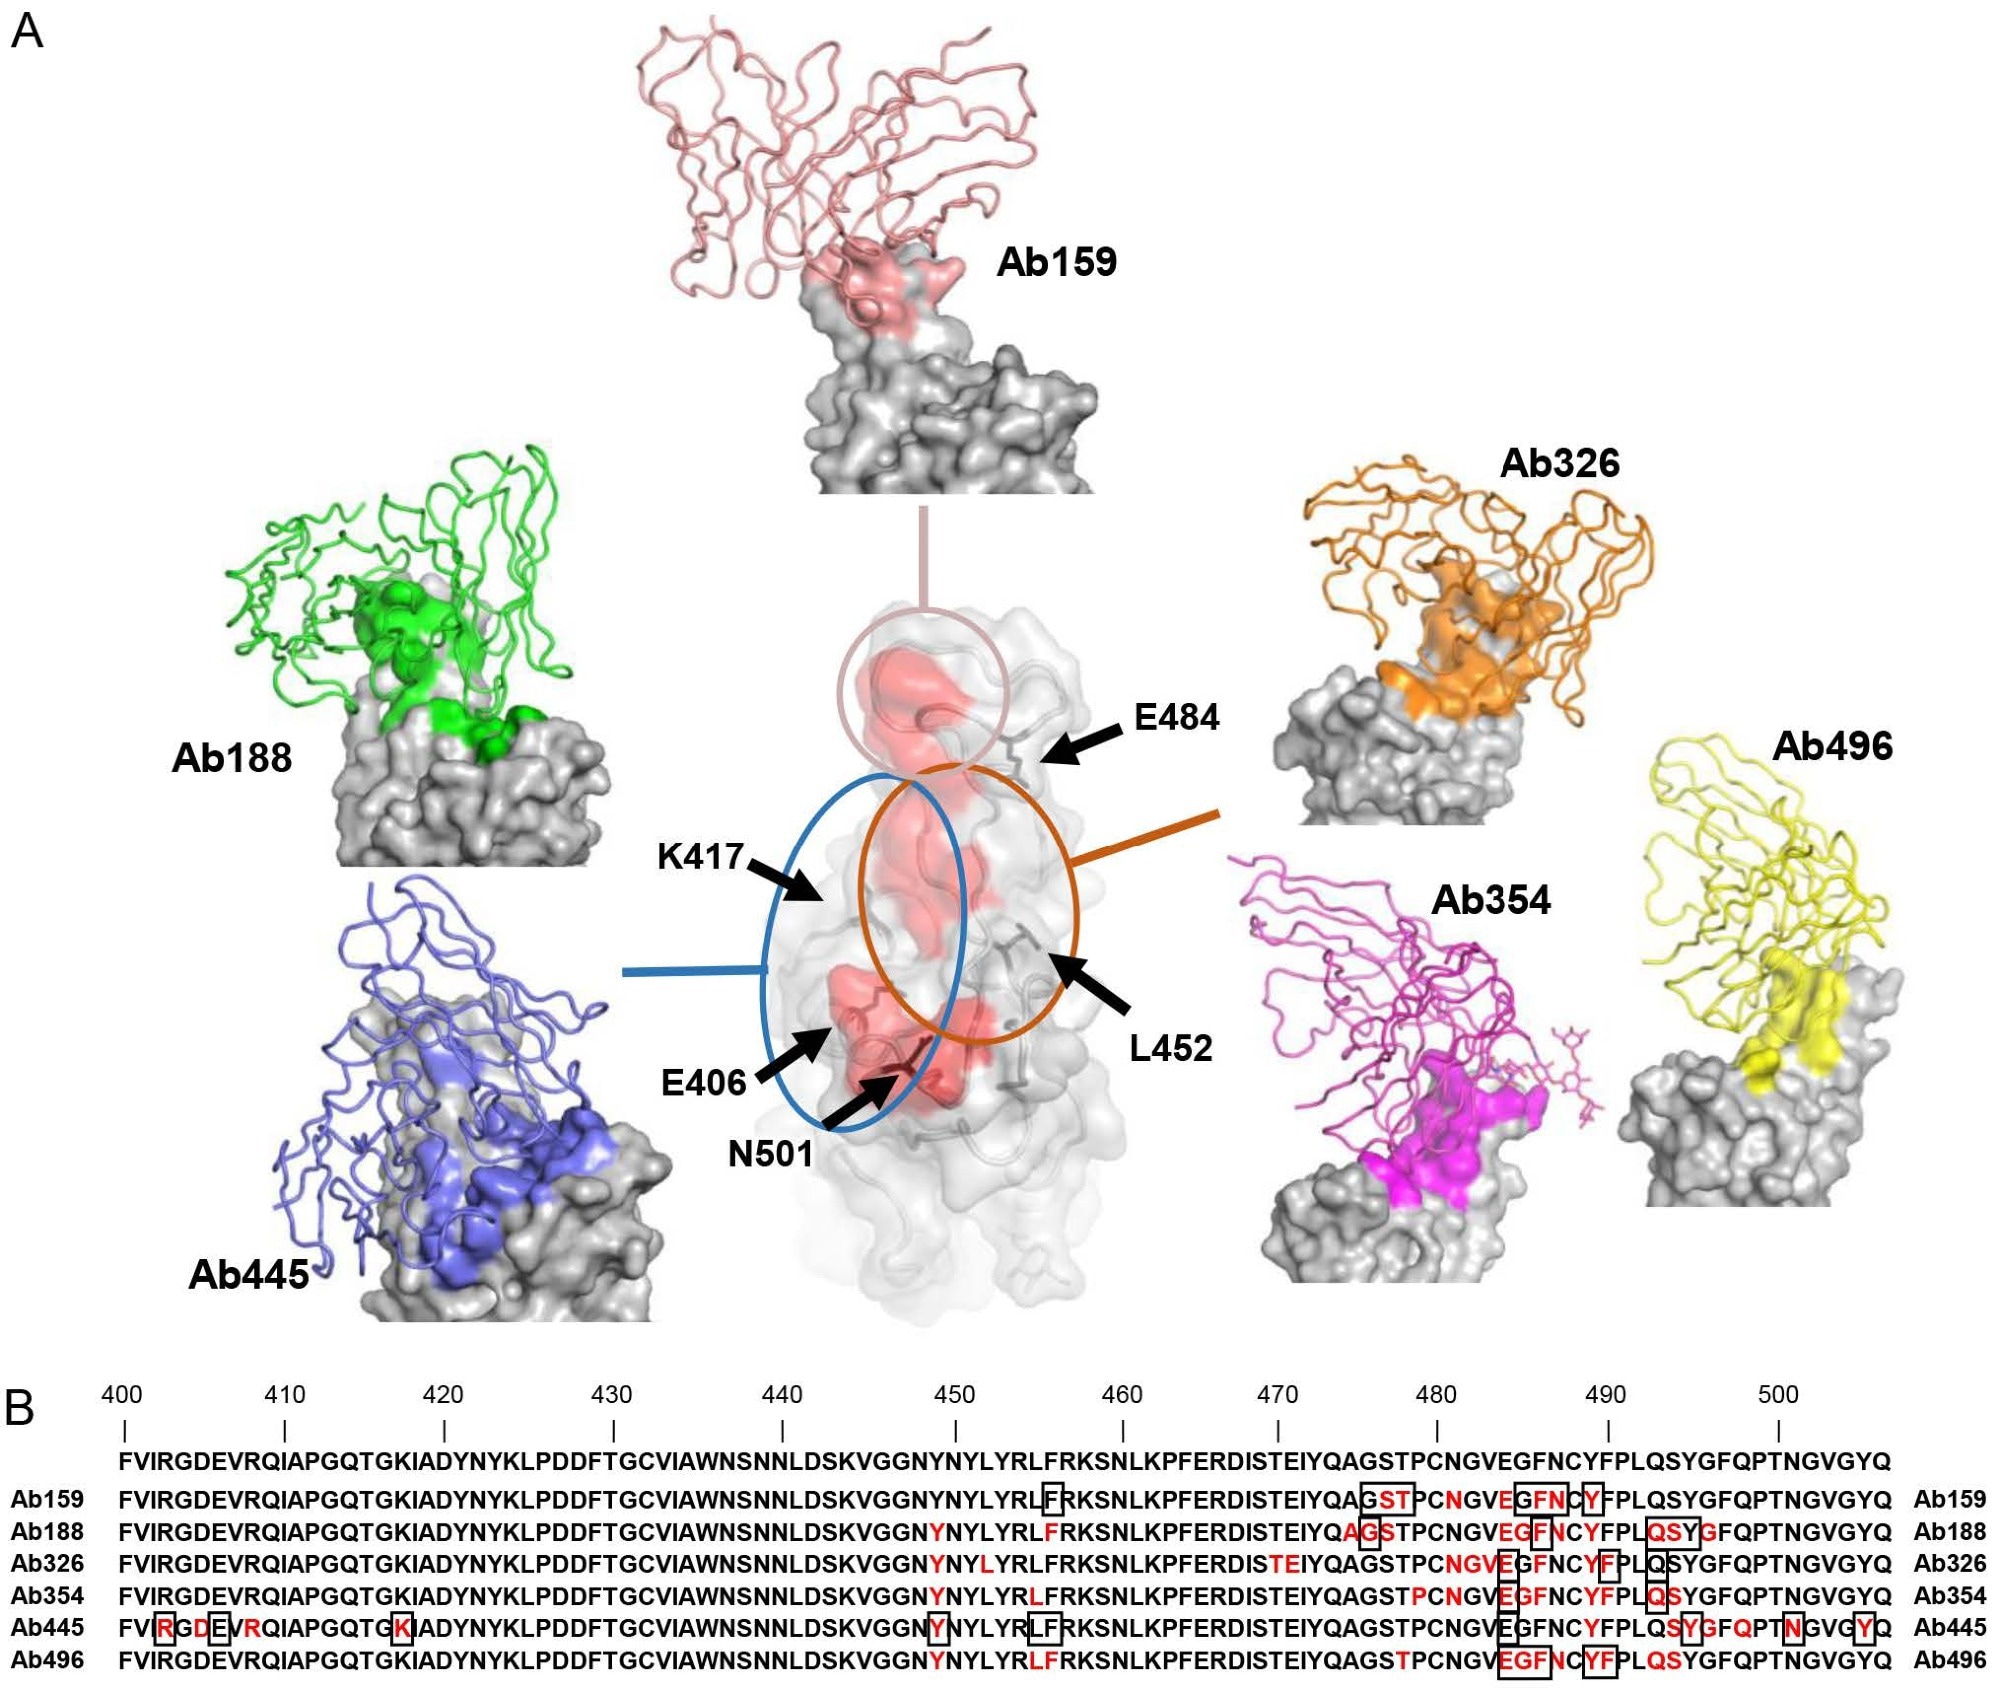 Cryo-EM структура на неутрализиращи антитела (A) Показани са структурите на RBD и Ab159, Ab188, Ab326, Ab354, Ab445 и Ab496.  Само променливите домейни на антителата са моделирани и нарисувани като анимационна тръба (индивидуален цвят) върху повърхността на RBD (сива), а епитопът на всяко антитяло е оцветен по същия начин като всяко антитяло.  Червената зона в централния RBD е свързващият остатък на ACE2 (7A94) (Benton et al., 2020), показващ връзката между местата на свързване на антителата, които са грубо разделени на три групи.  Позициите на ключовите аминокиселини са обозначени с черни стрелки.  (B) Показани са остатъците 400-506 от Спайк.  Епитопите, разкрити от крио-ЕМ, са оцветени в червено, а остатъците, засегнати от мутацията, описана на Фигура 3А, са показани в квадрати.